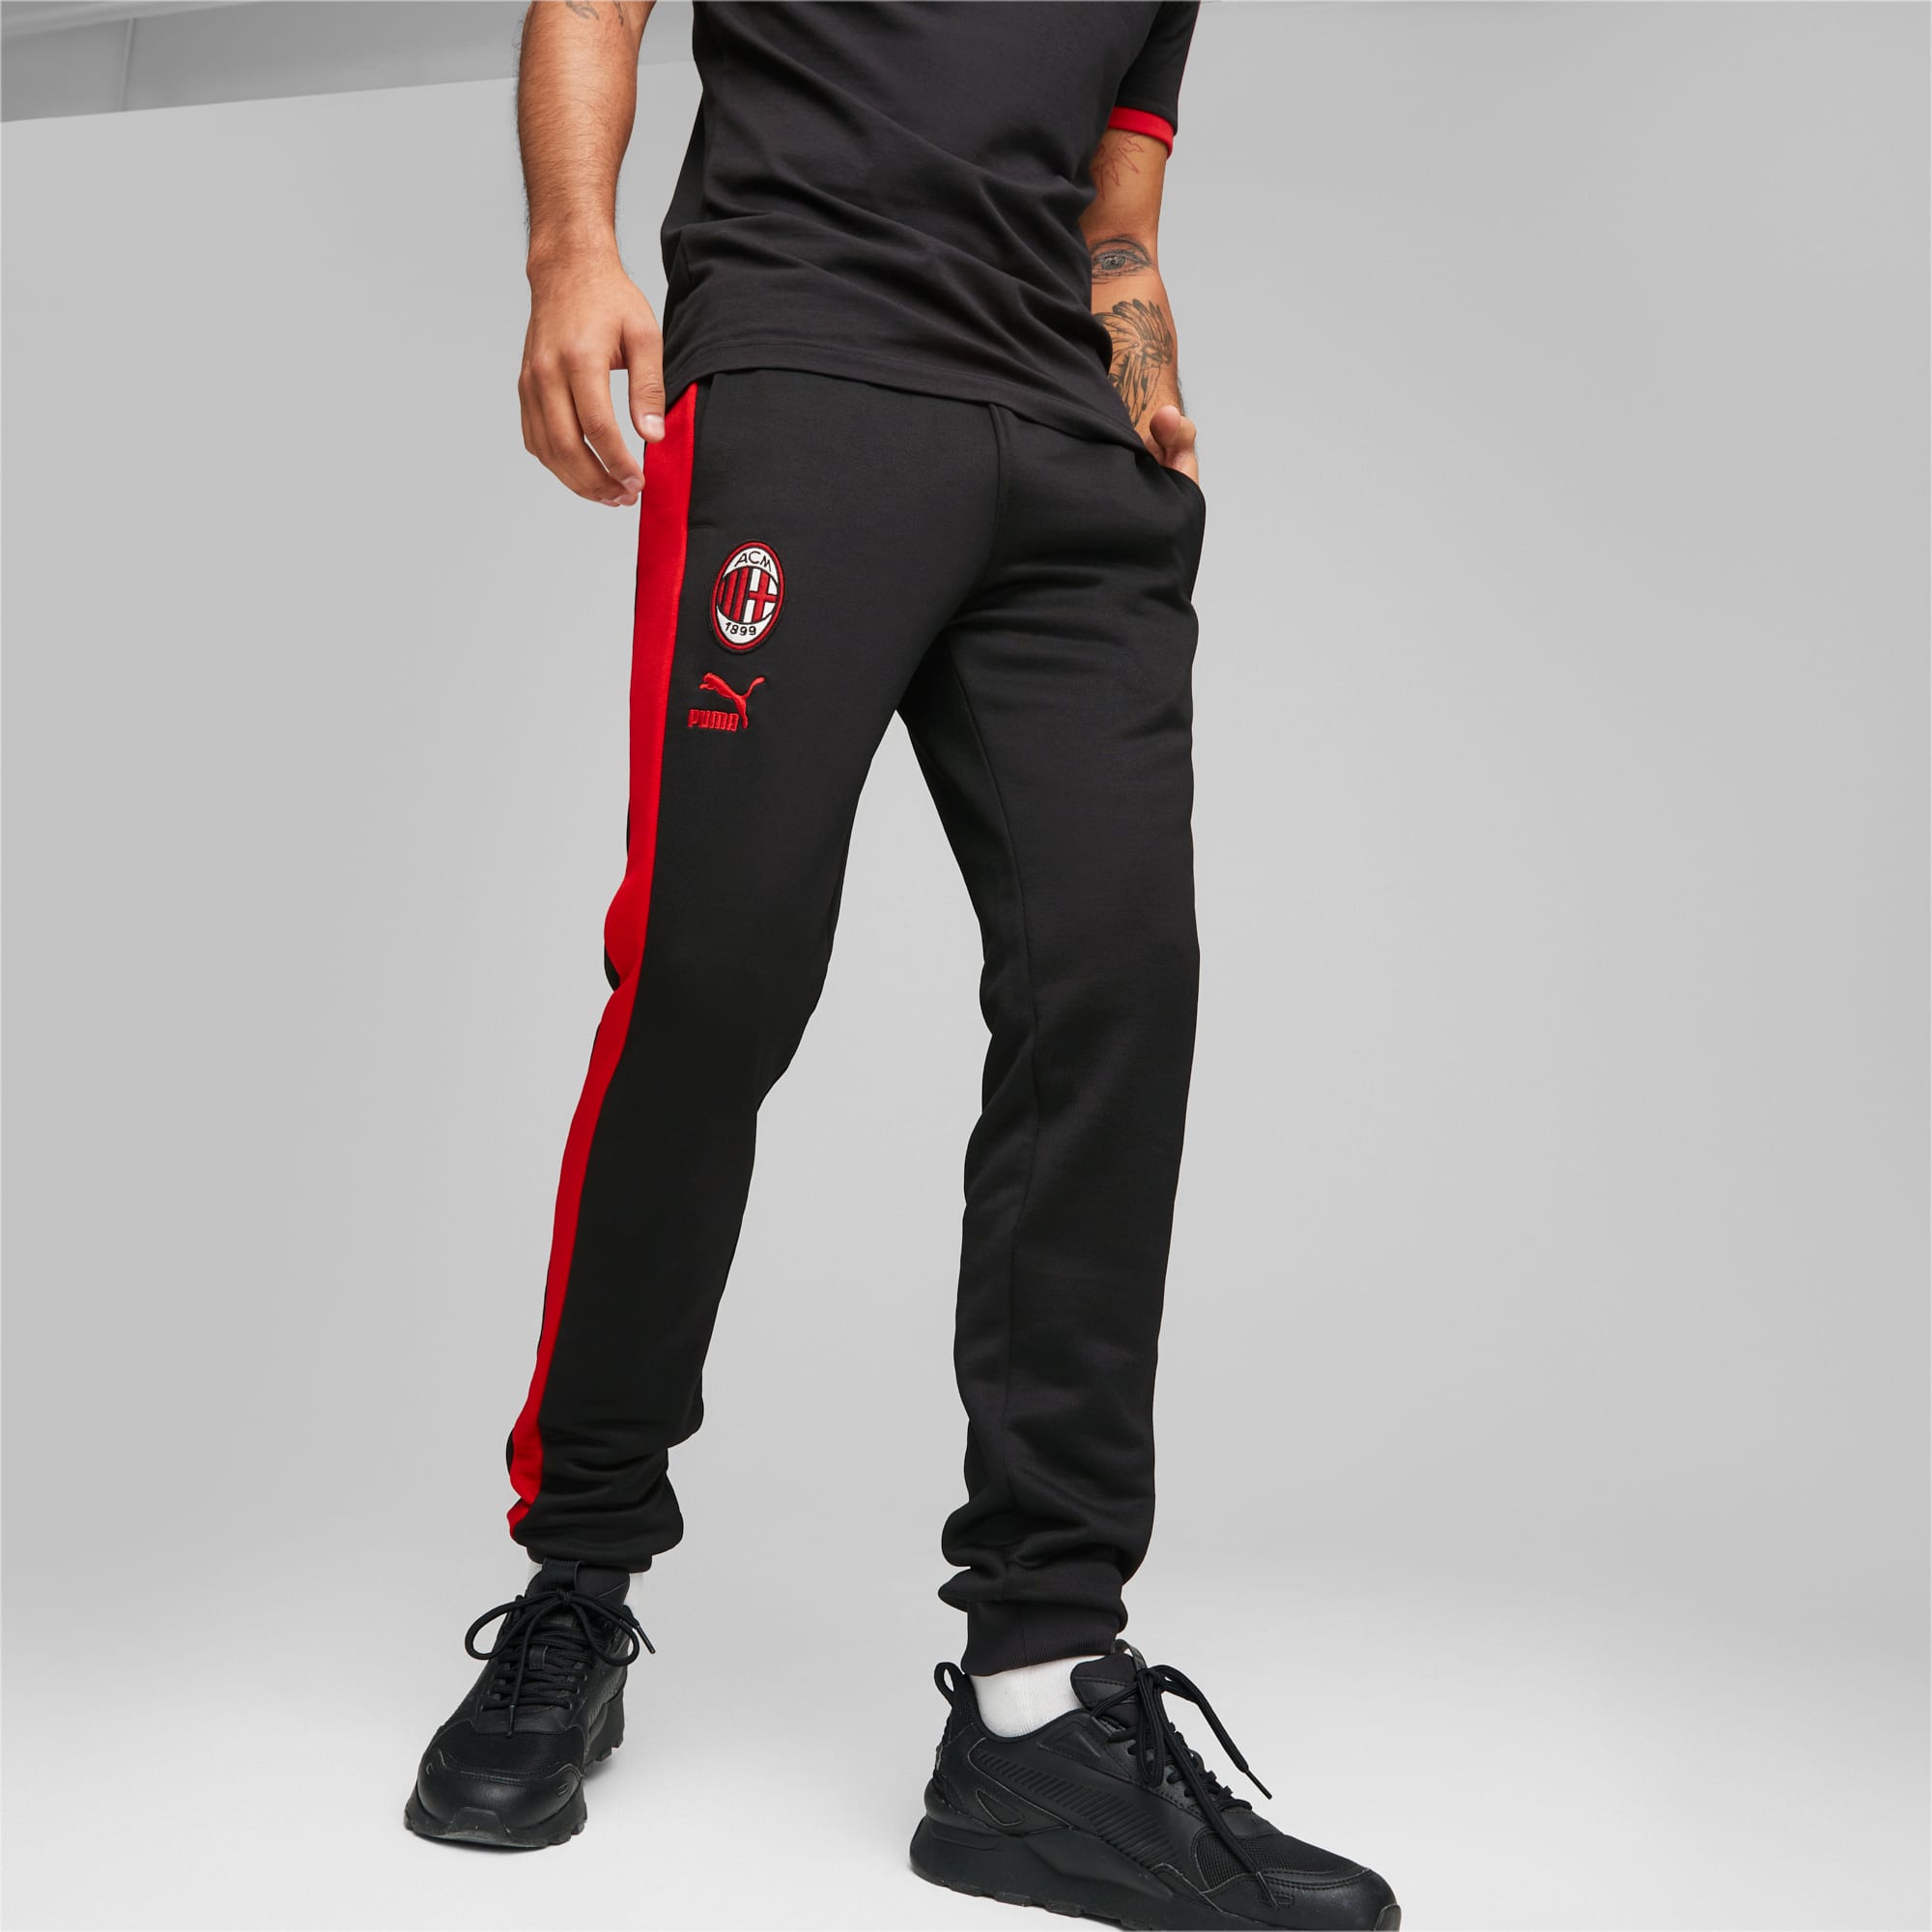 Pantalones deportivos ftblHeritage T7 del A.C. Milan para hombre | |